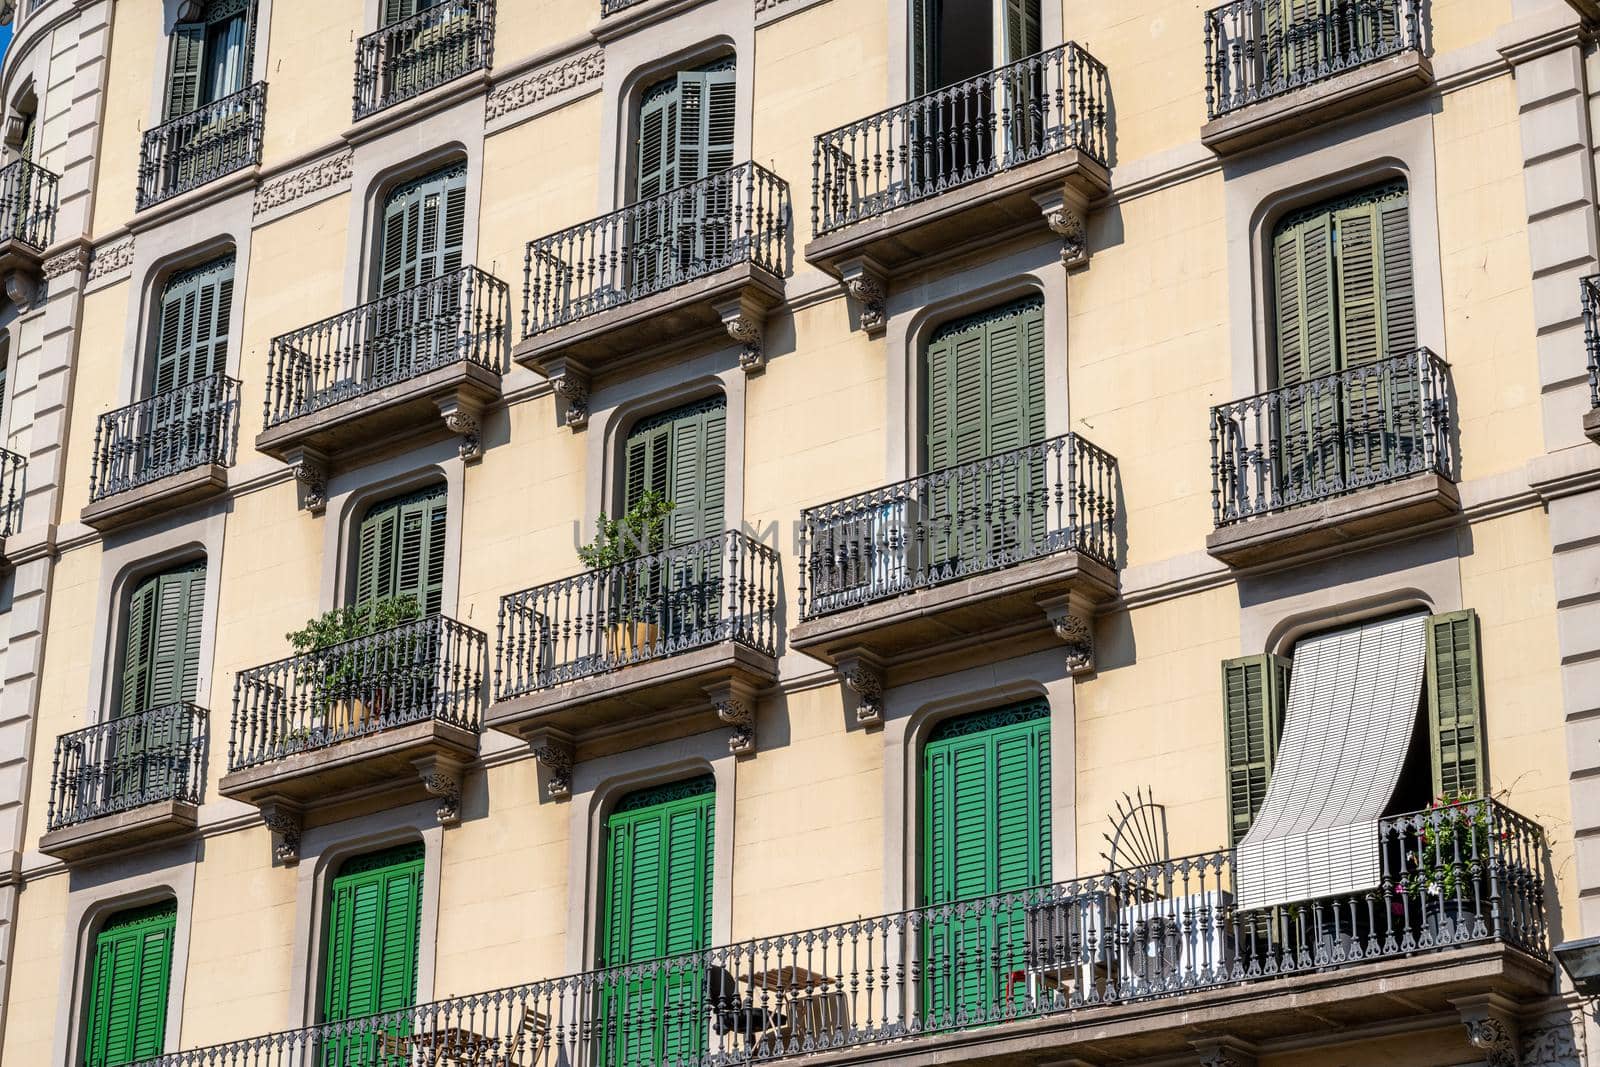 Typical house facade of Barcelona, Spain by elxeneize